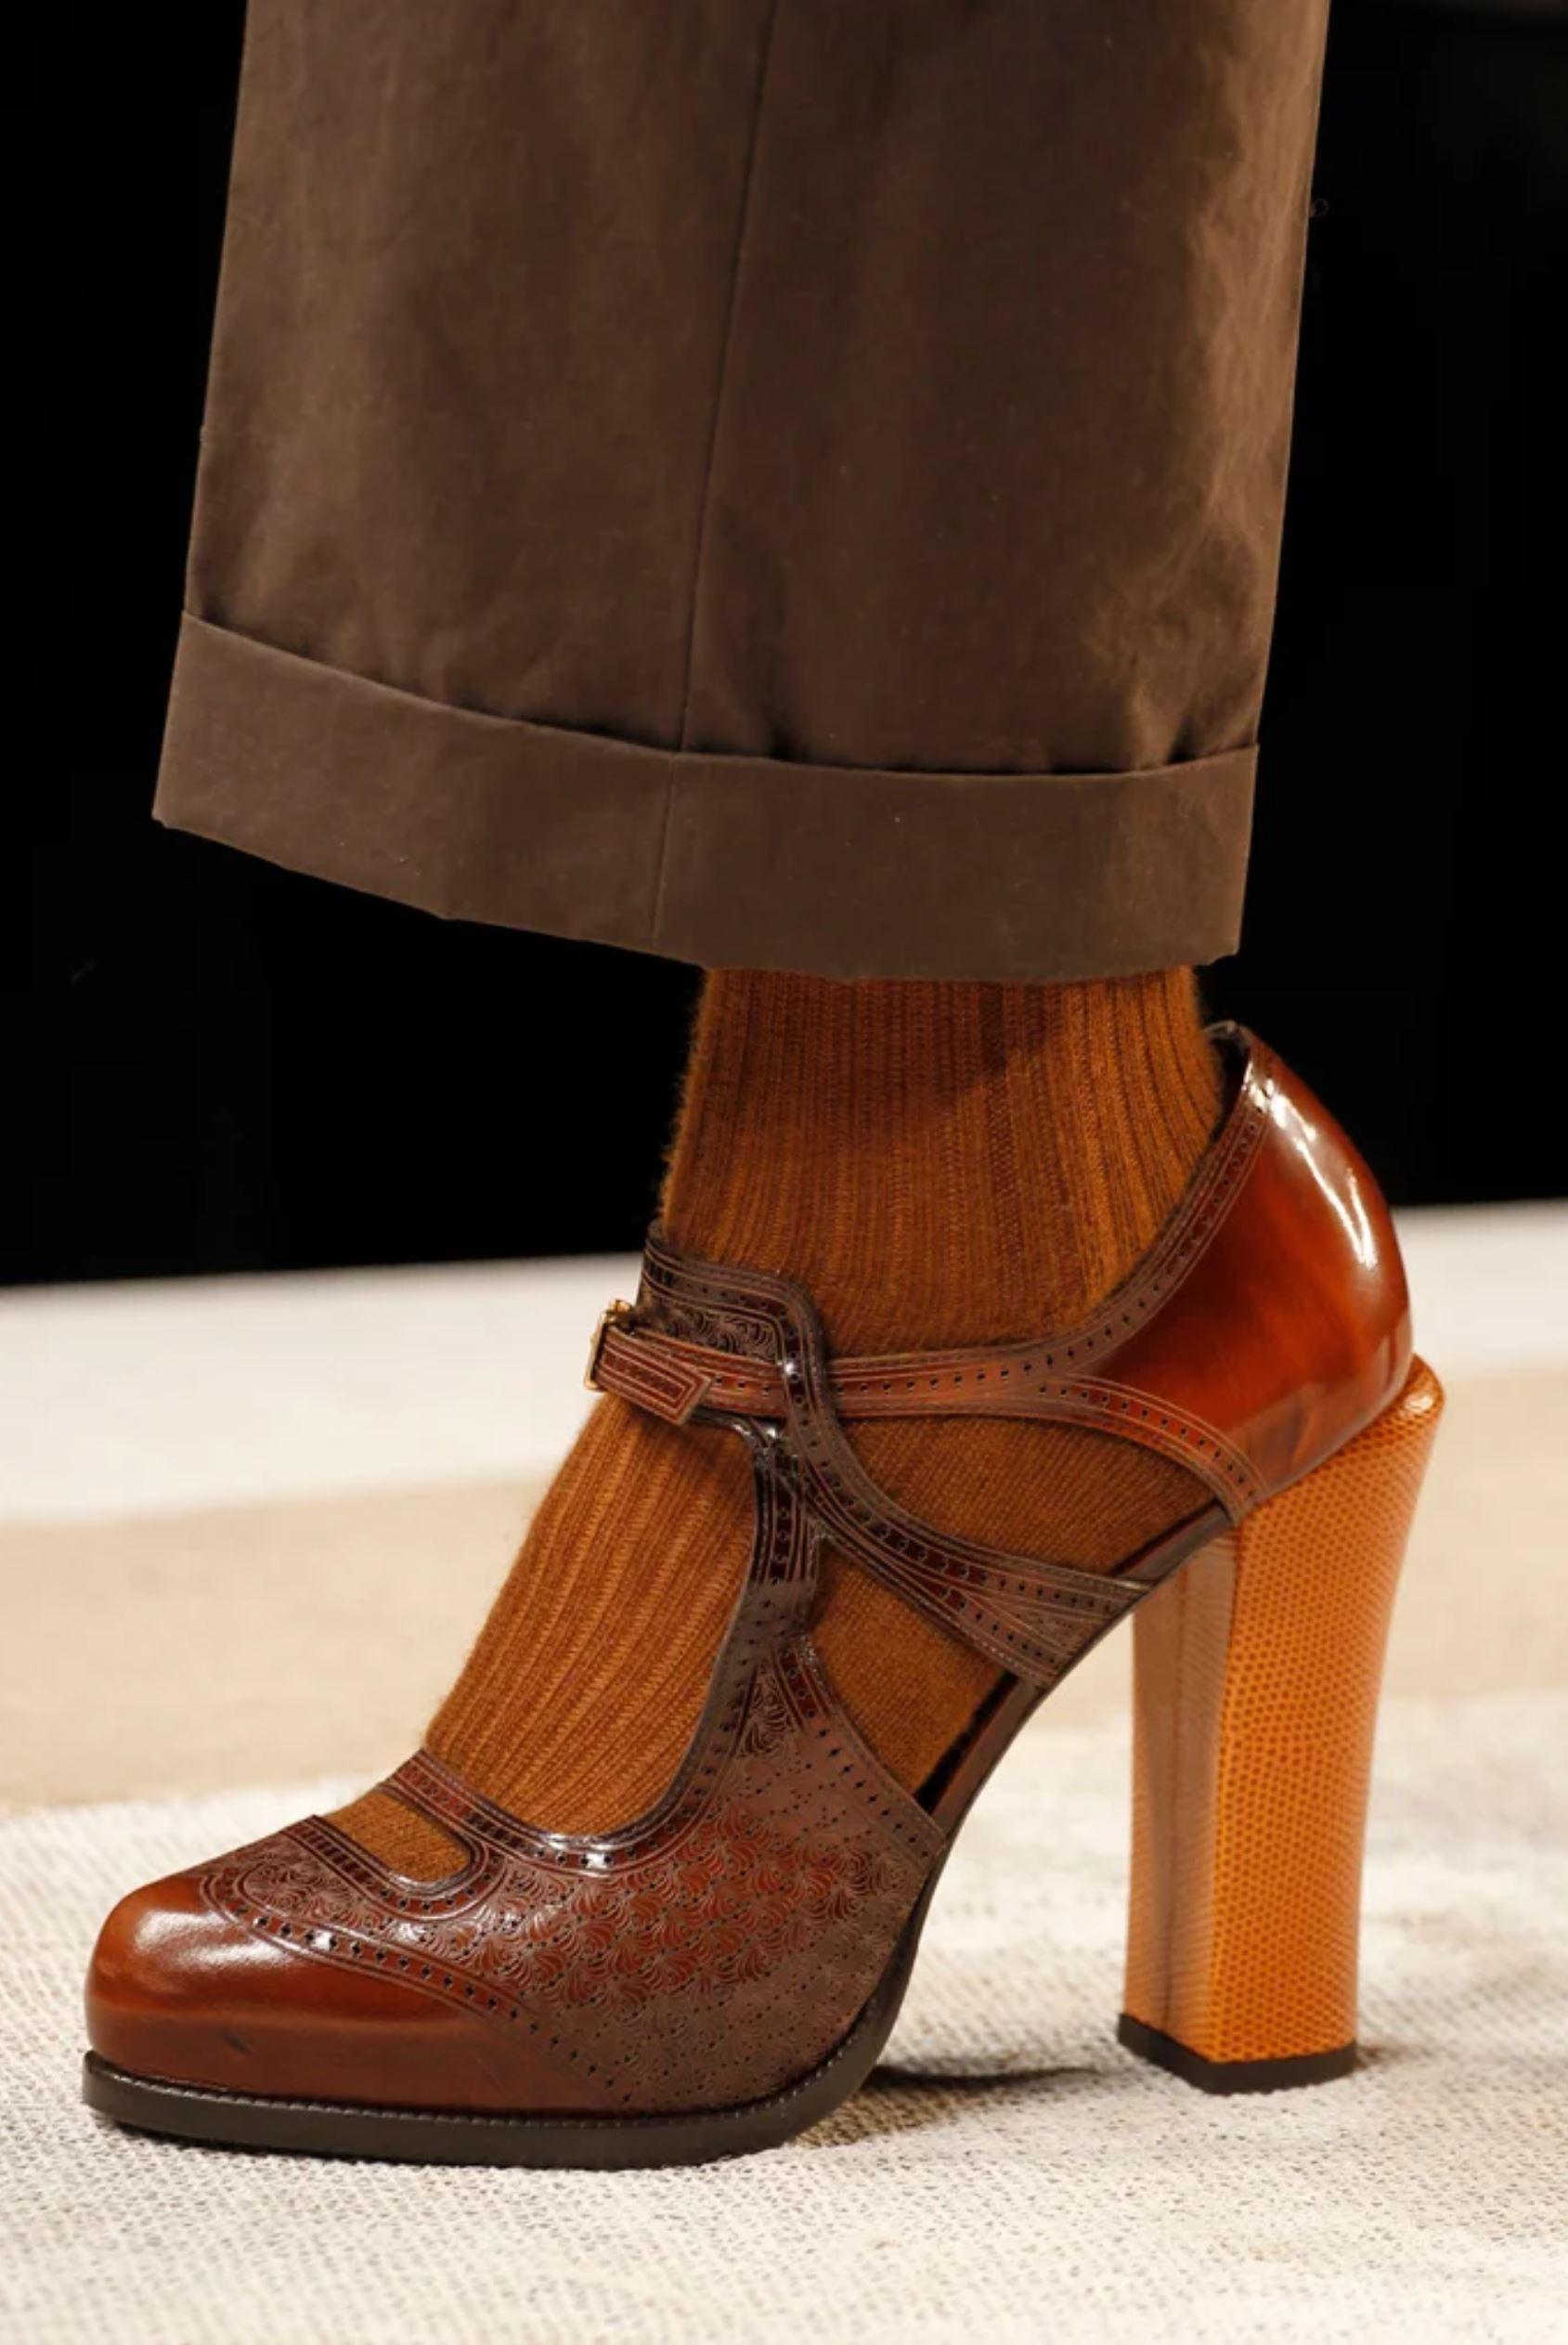 New Fendi Karl Lagerfeld F/W 2011 Leather Platform Pumps Heels Sz 37.5 ...